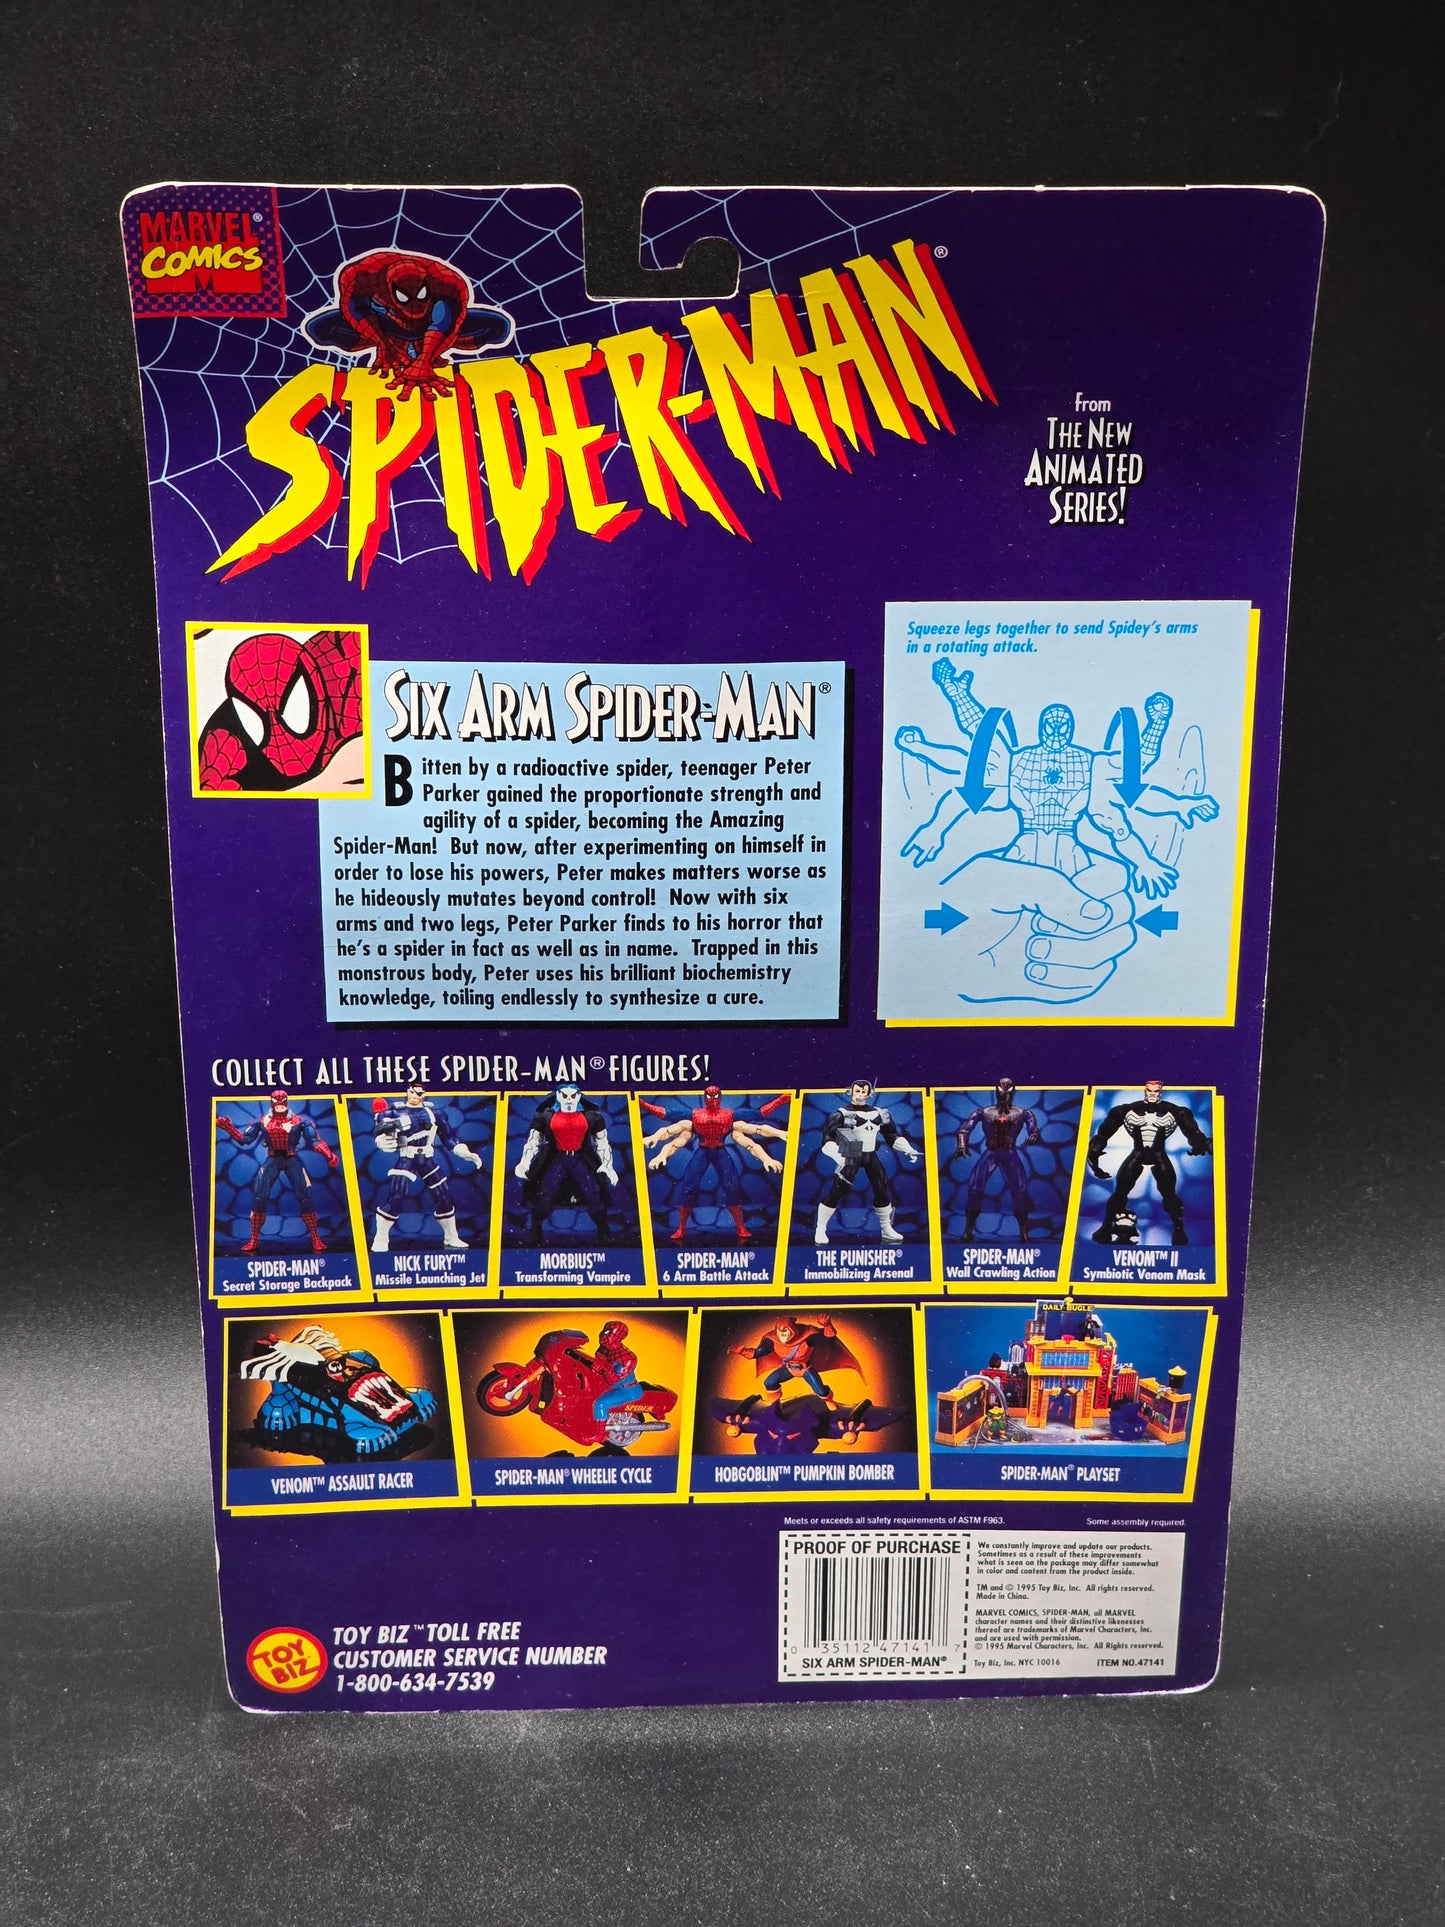 Six Arm Spider-Man, Spider-Man Animated series Toybiz 1995